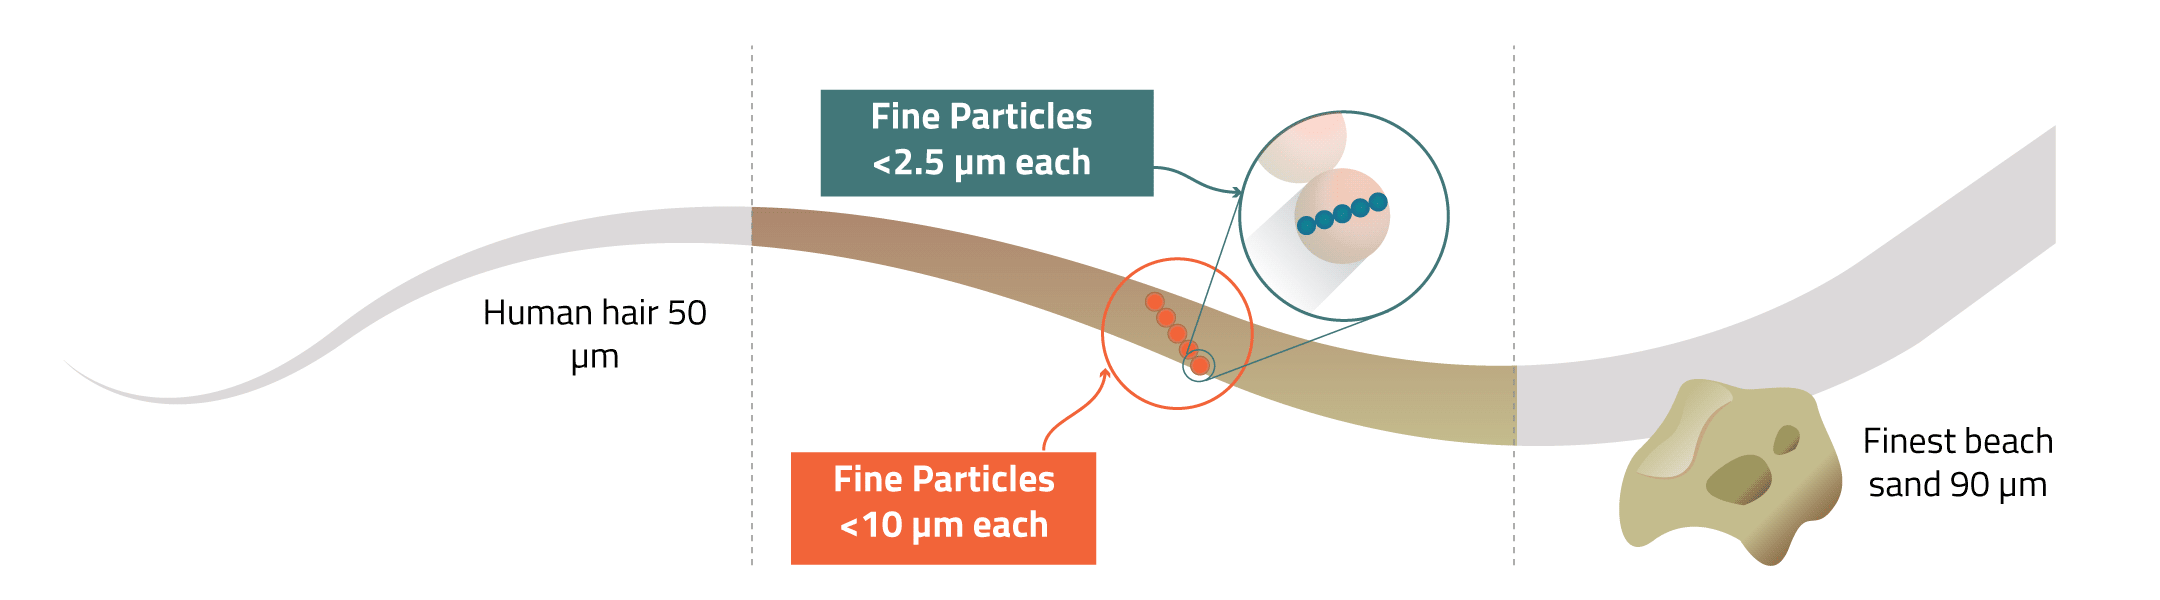 Fine particles